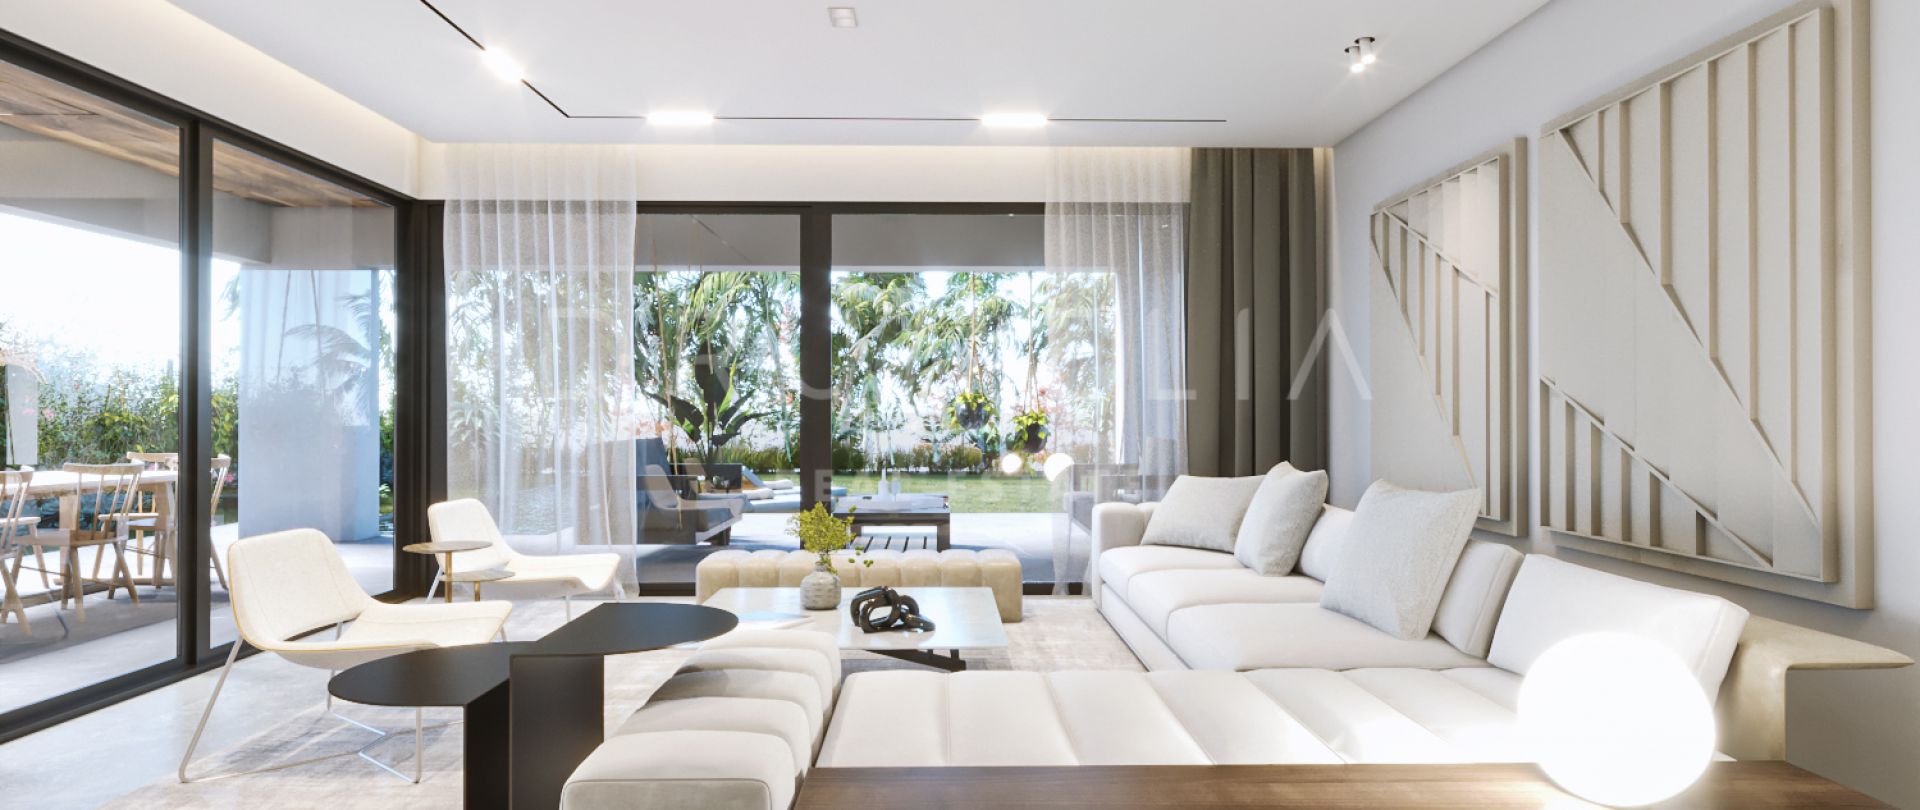 Villa de luxe de style contemporain flambant neuve à vendre sur le nouveau Golden Mile d'Estepona